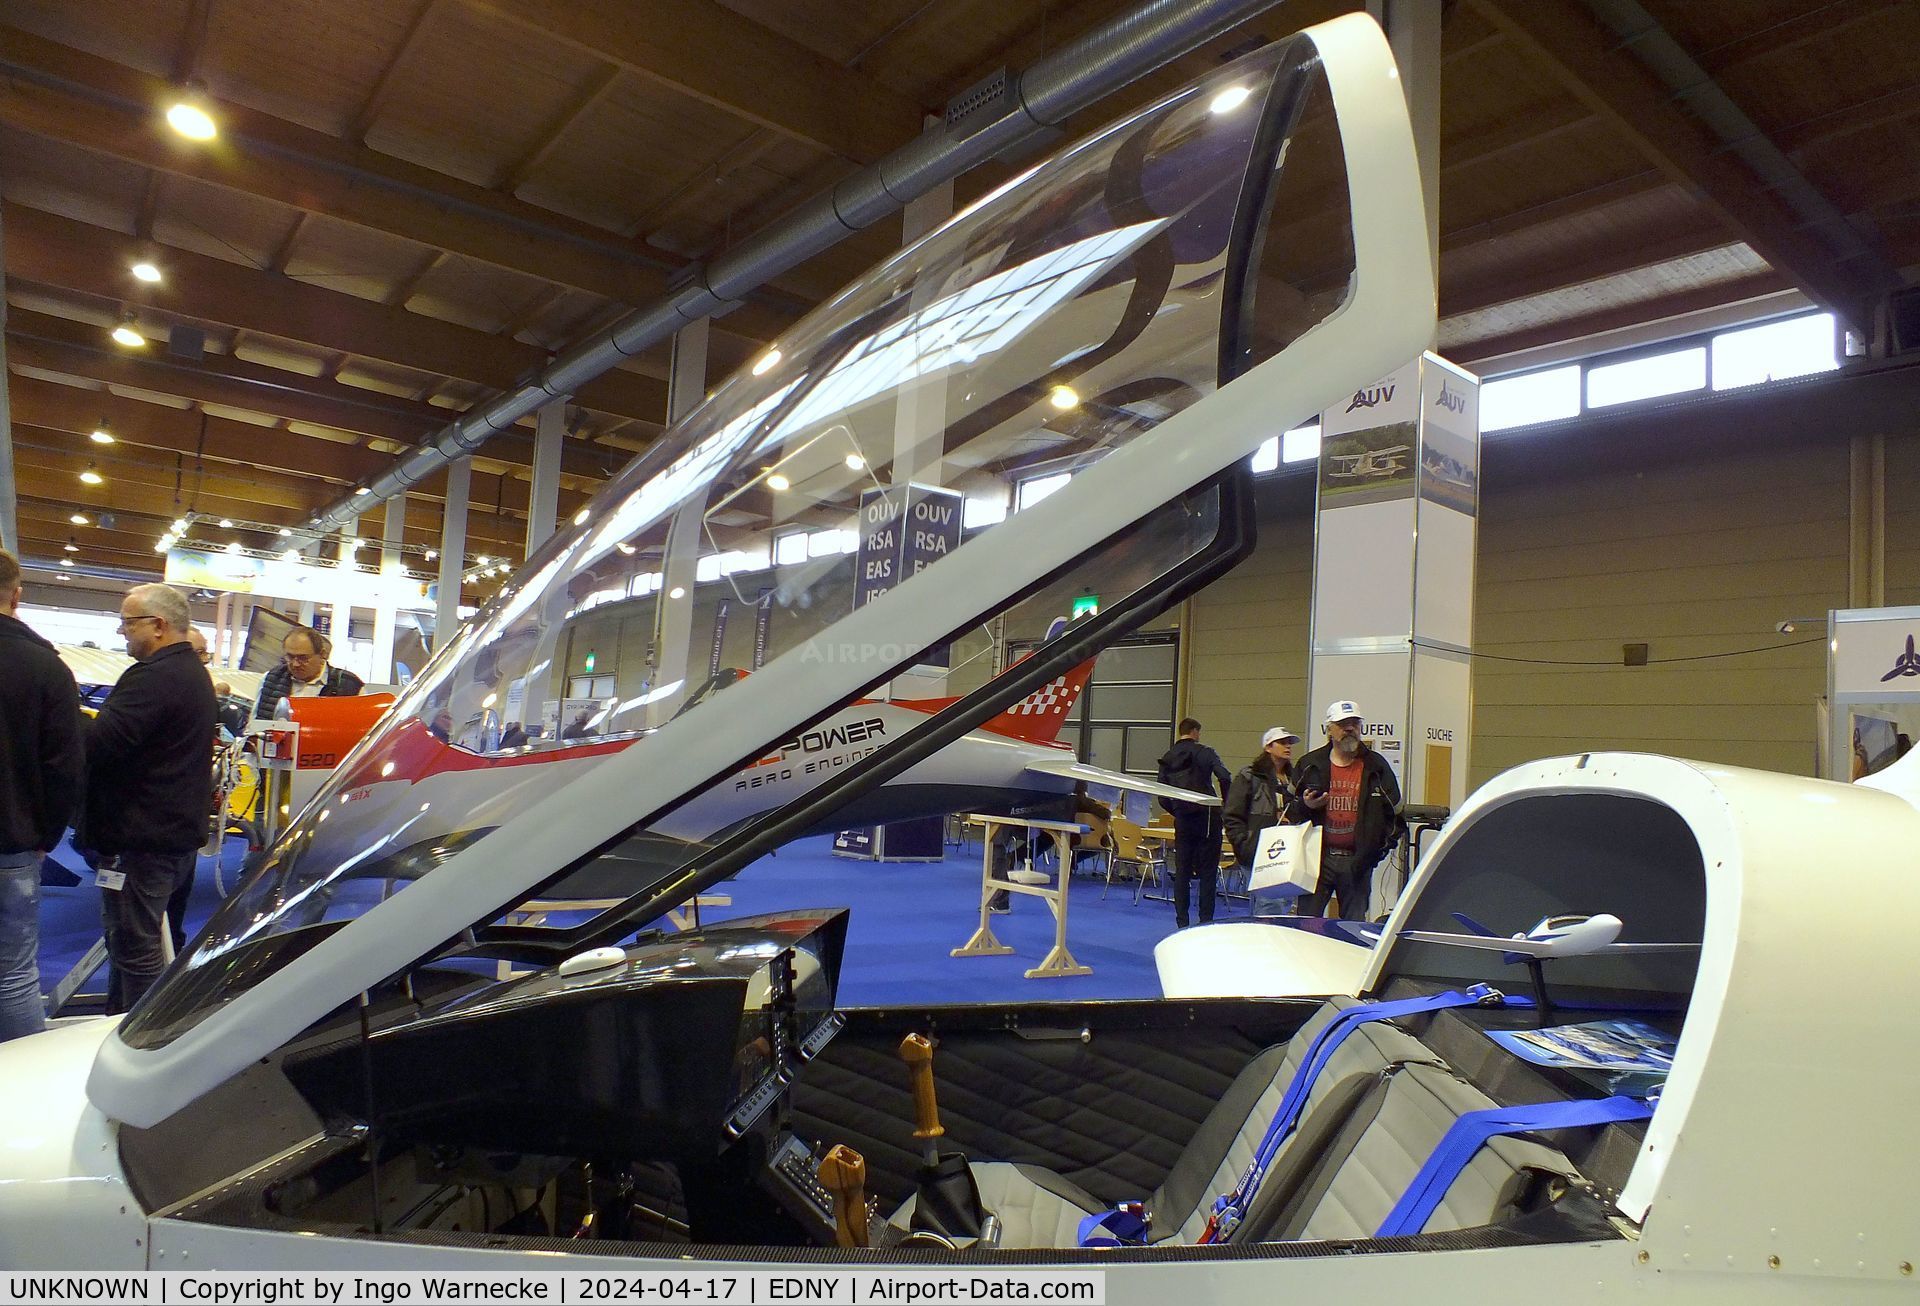 UNKNOWN, 2024 Villiger / Straub / Dünkli Traveller Jet Prototype C/N 01, Villiger / Straub / Dünkli Traveller Jet pre-prototype at the AERO 2024, Friedrichshafen #c